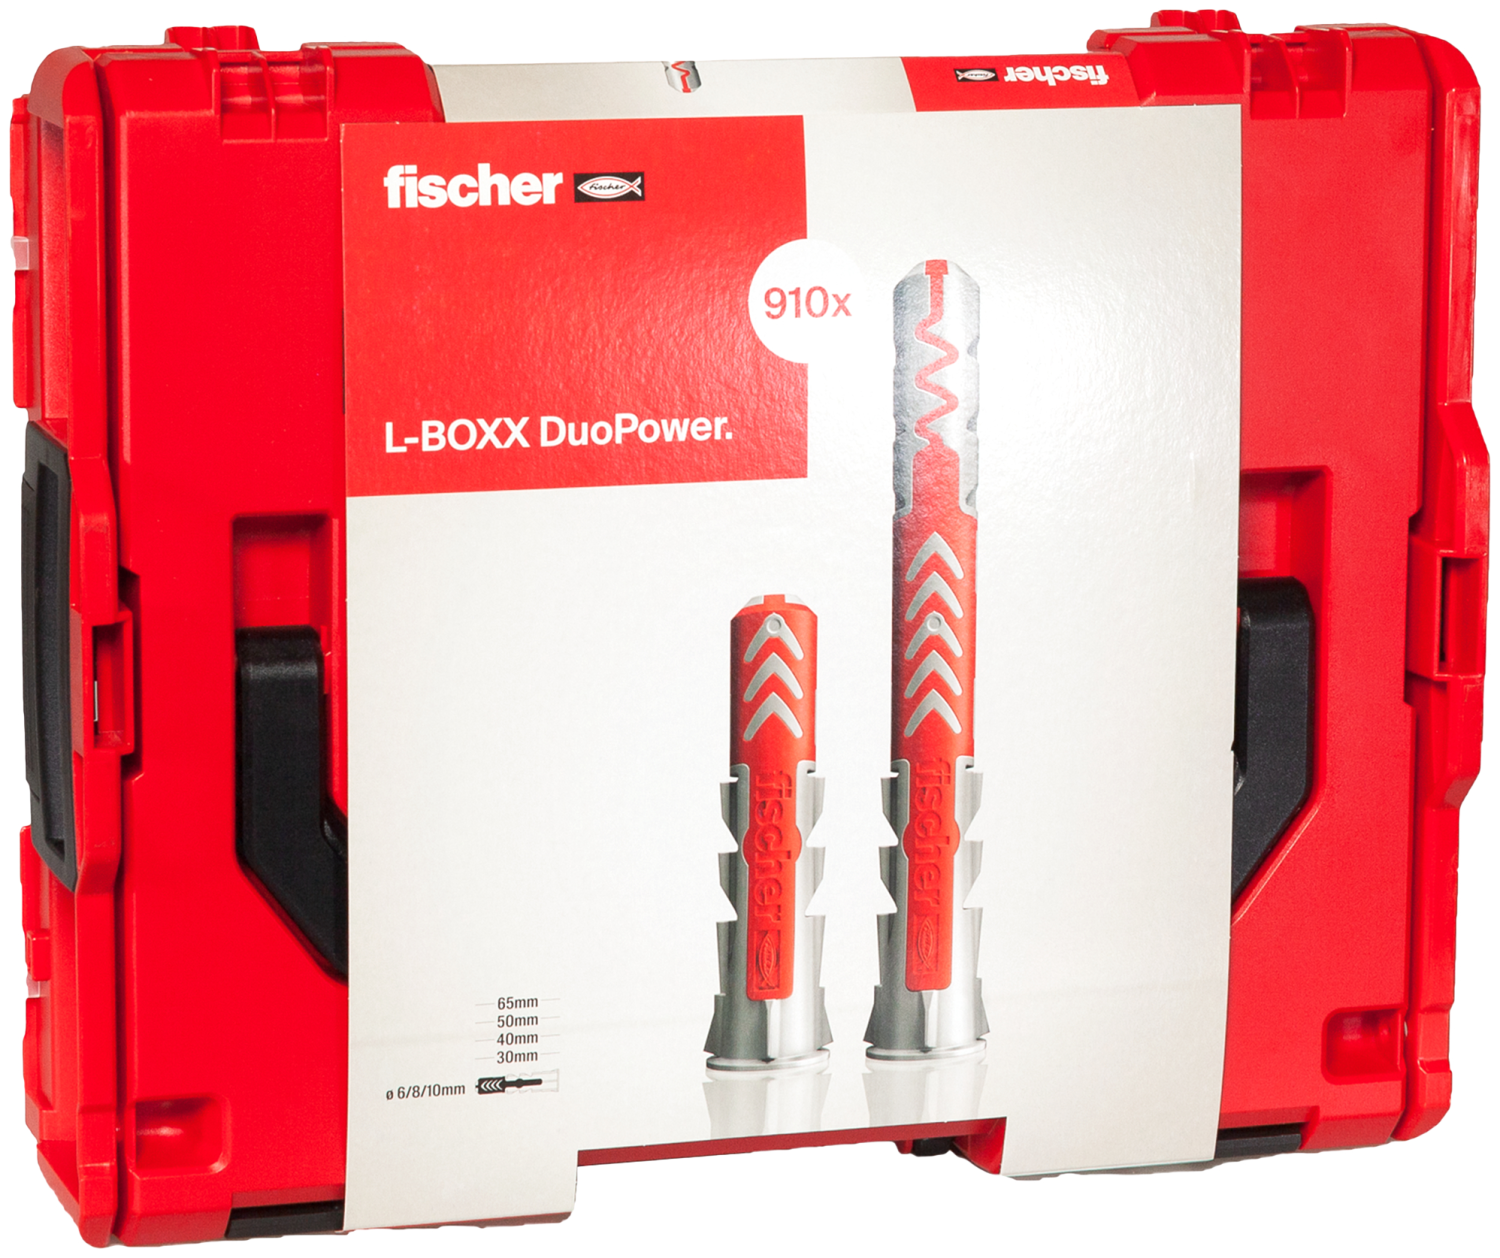 fischer DuoPower L-BOXX 102 - Set de chevilles (910pcs) dans L-Boxx